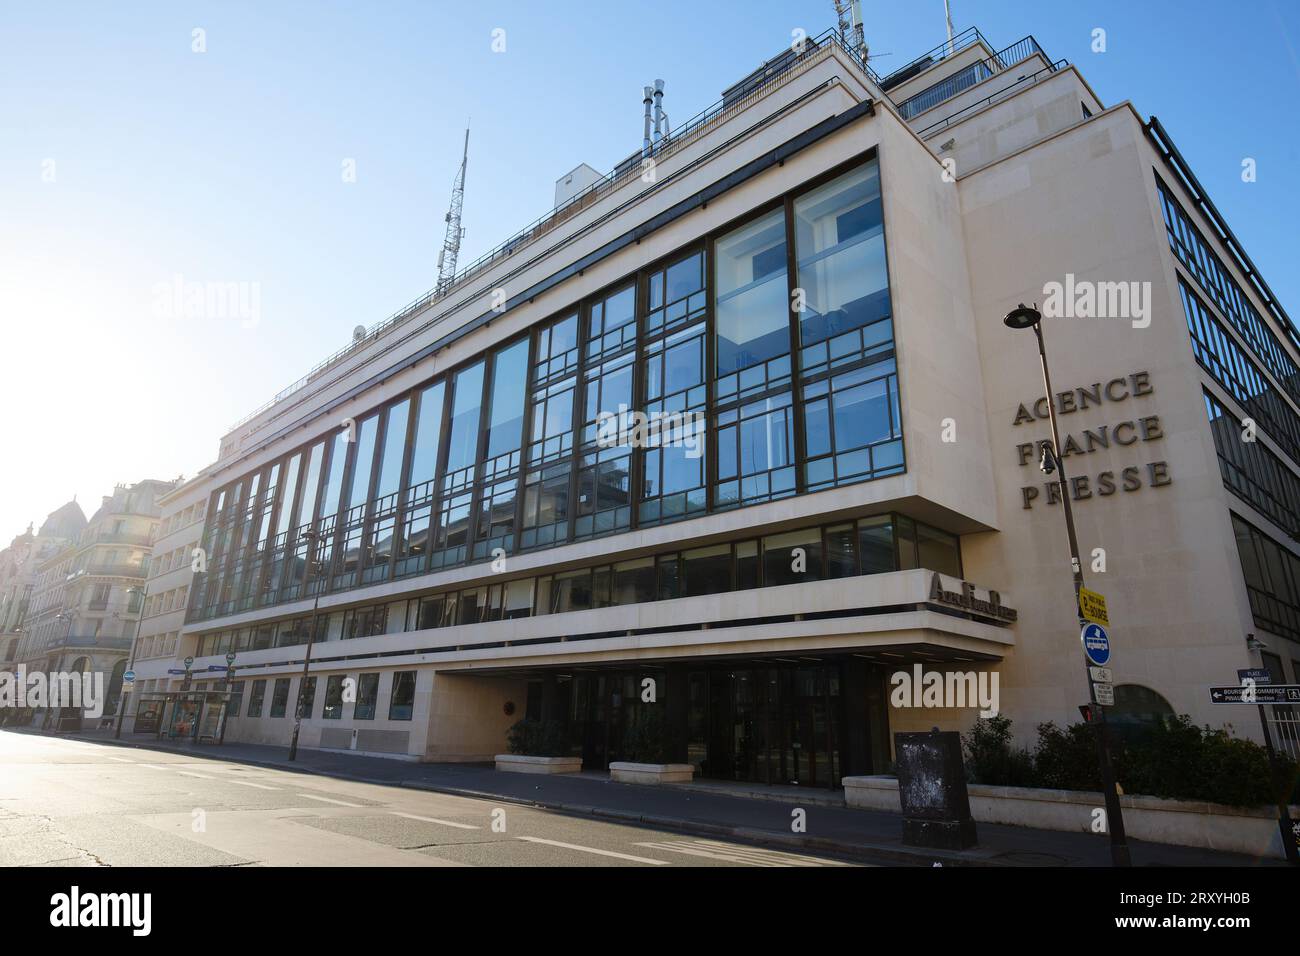 Vue extérieure de l'immeuble abritant le siège de l'Agence France-presse , agence de presse internationale générale et multimédia française Banque D'Images